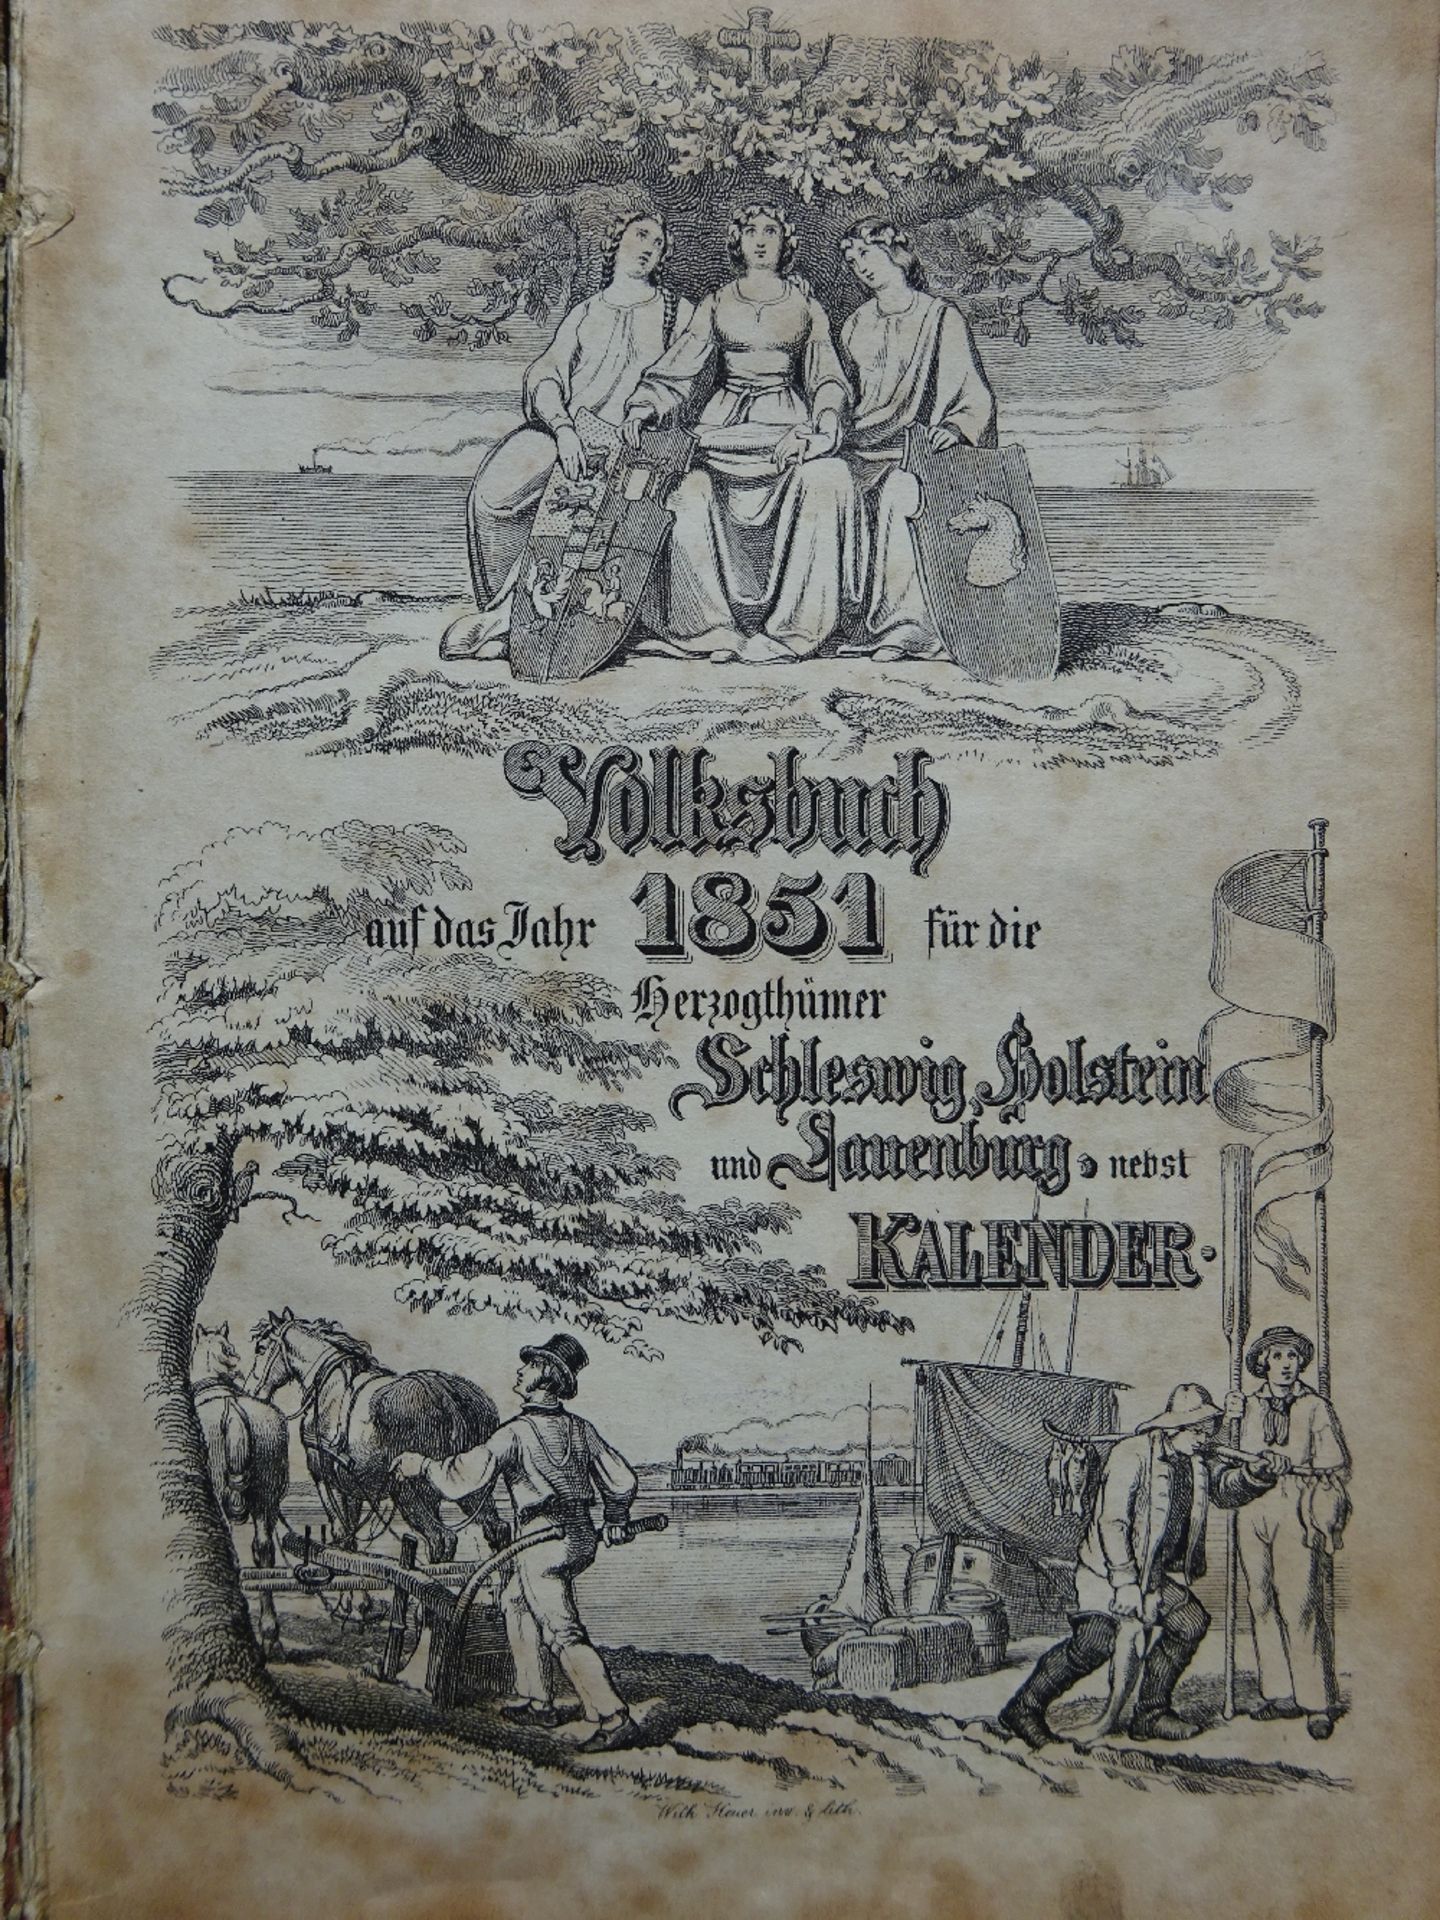 Volksbuch Schleswig-Holstein 1851 - Image 2 of 5